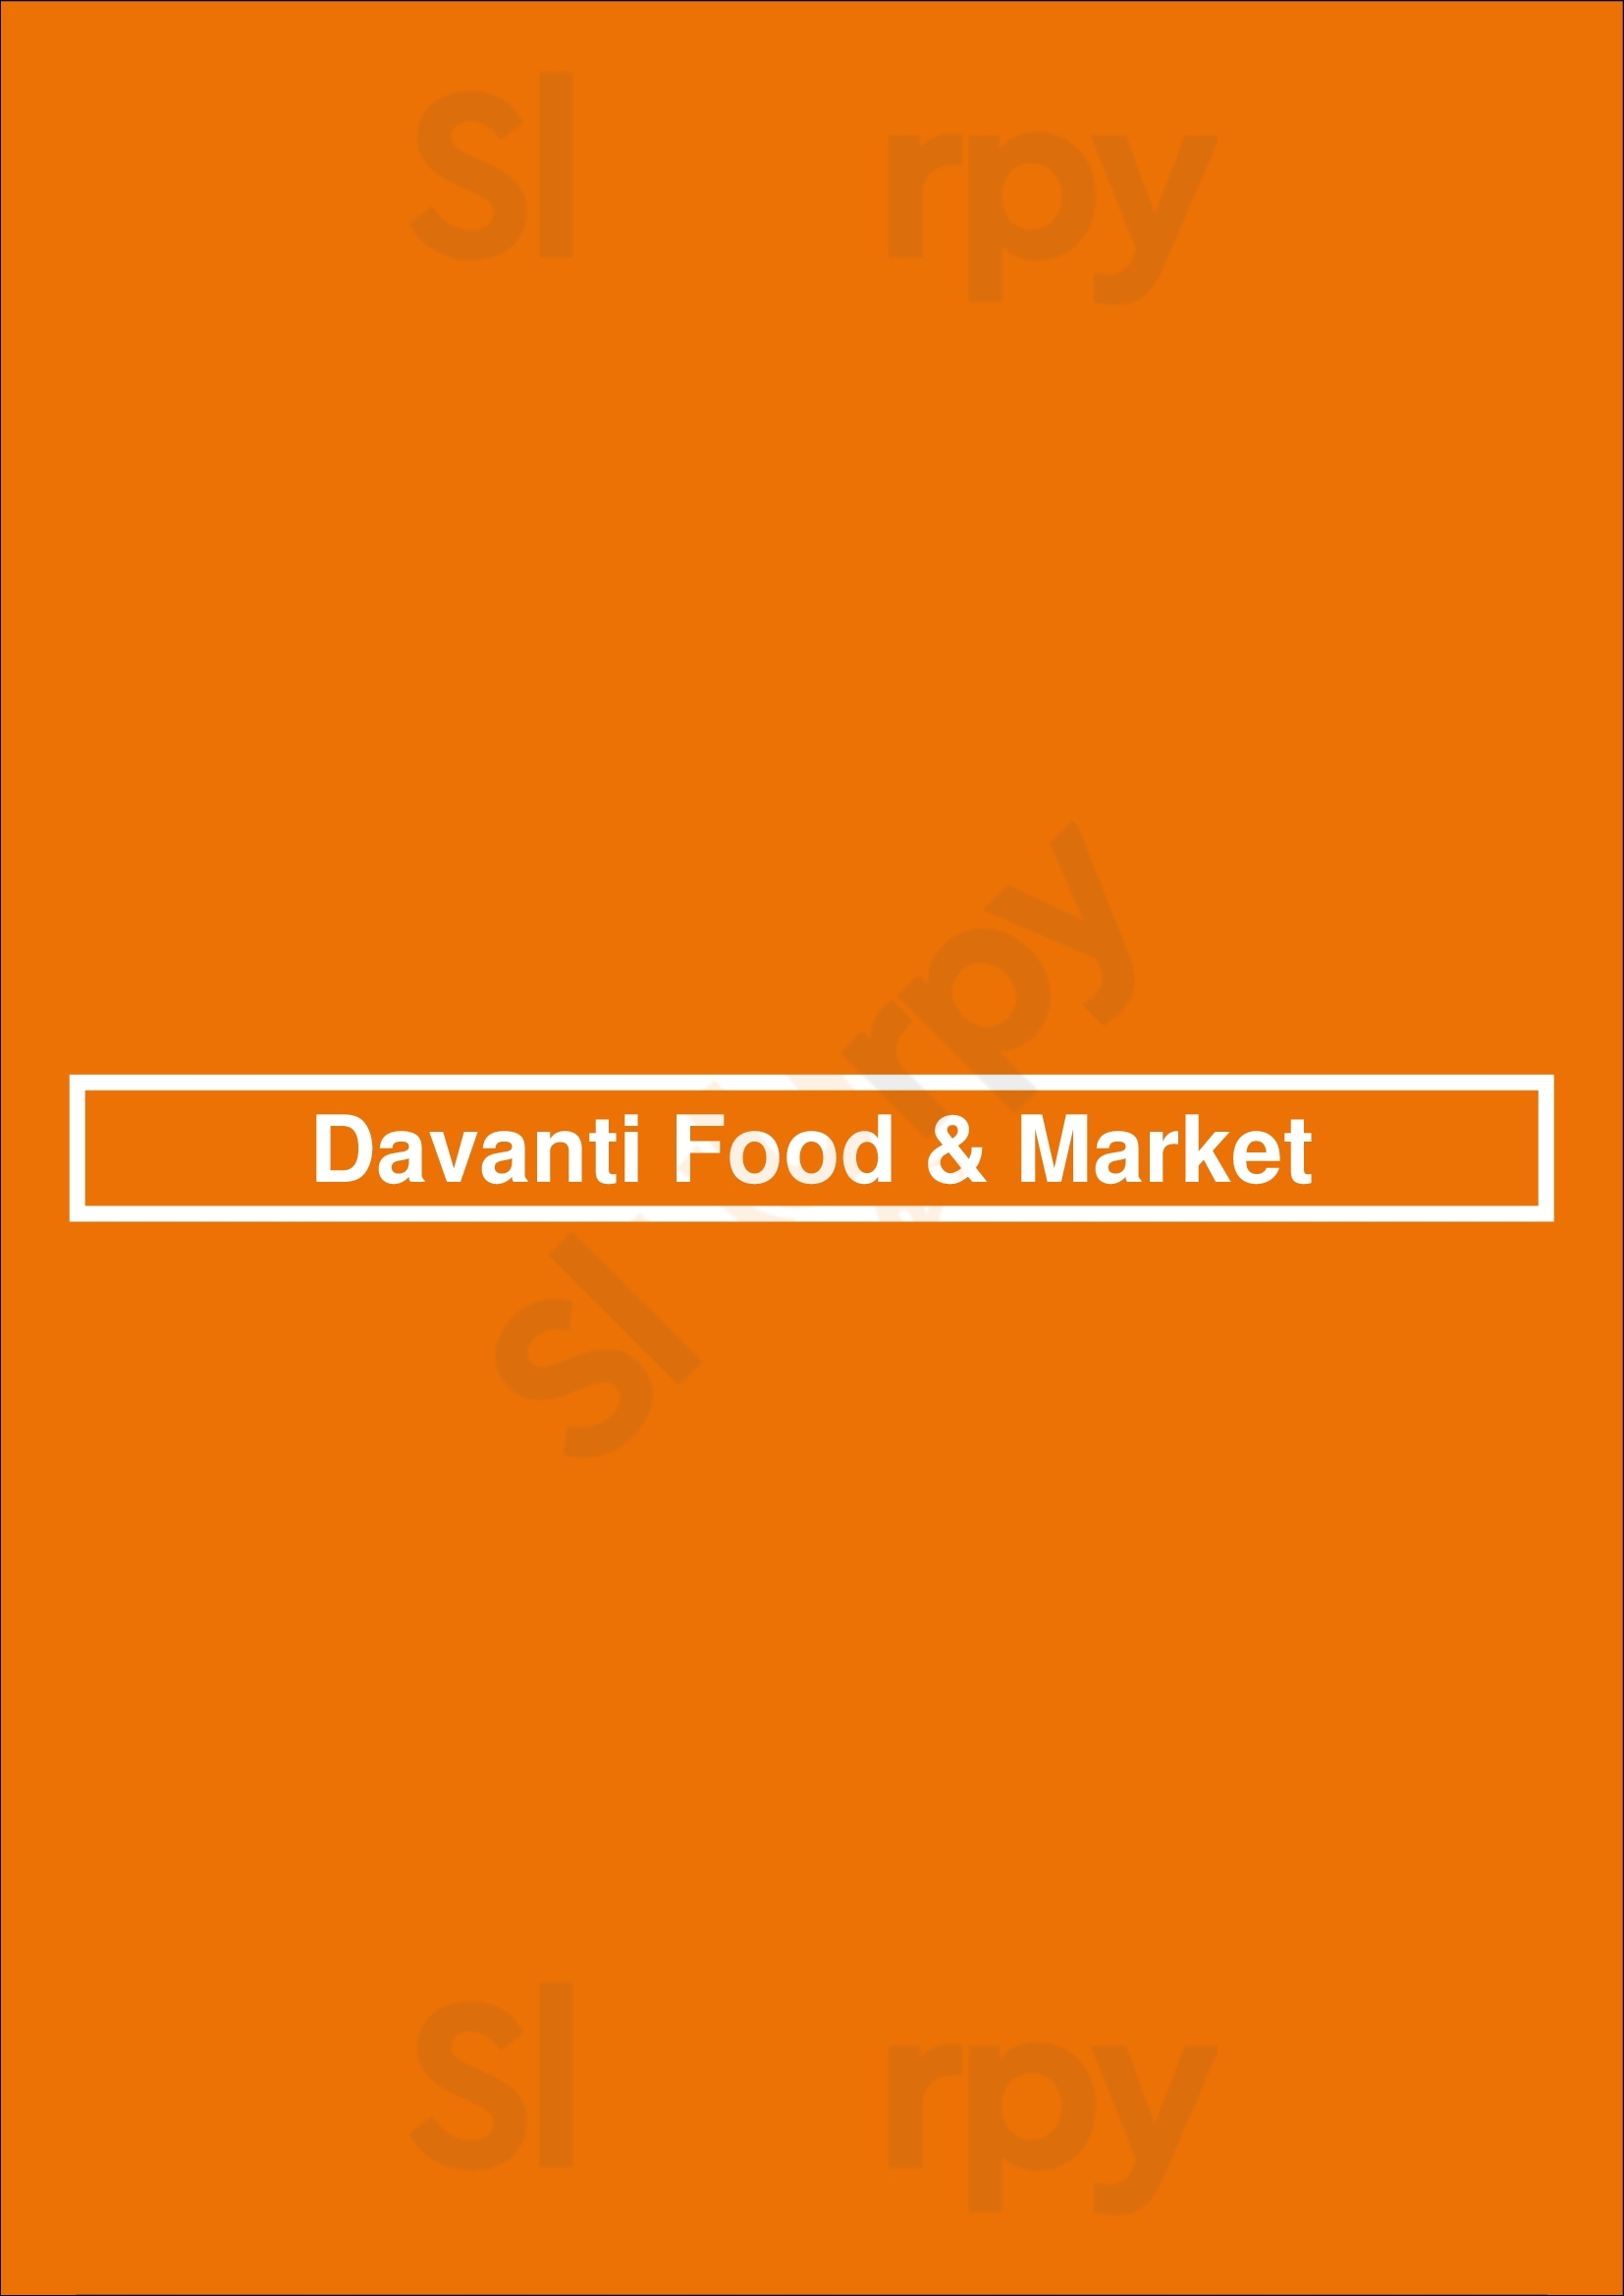 Davanti Food & Market Madrid Menu - 1